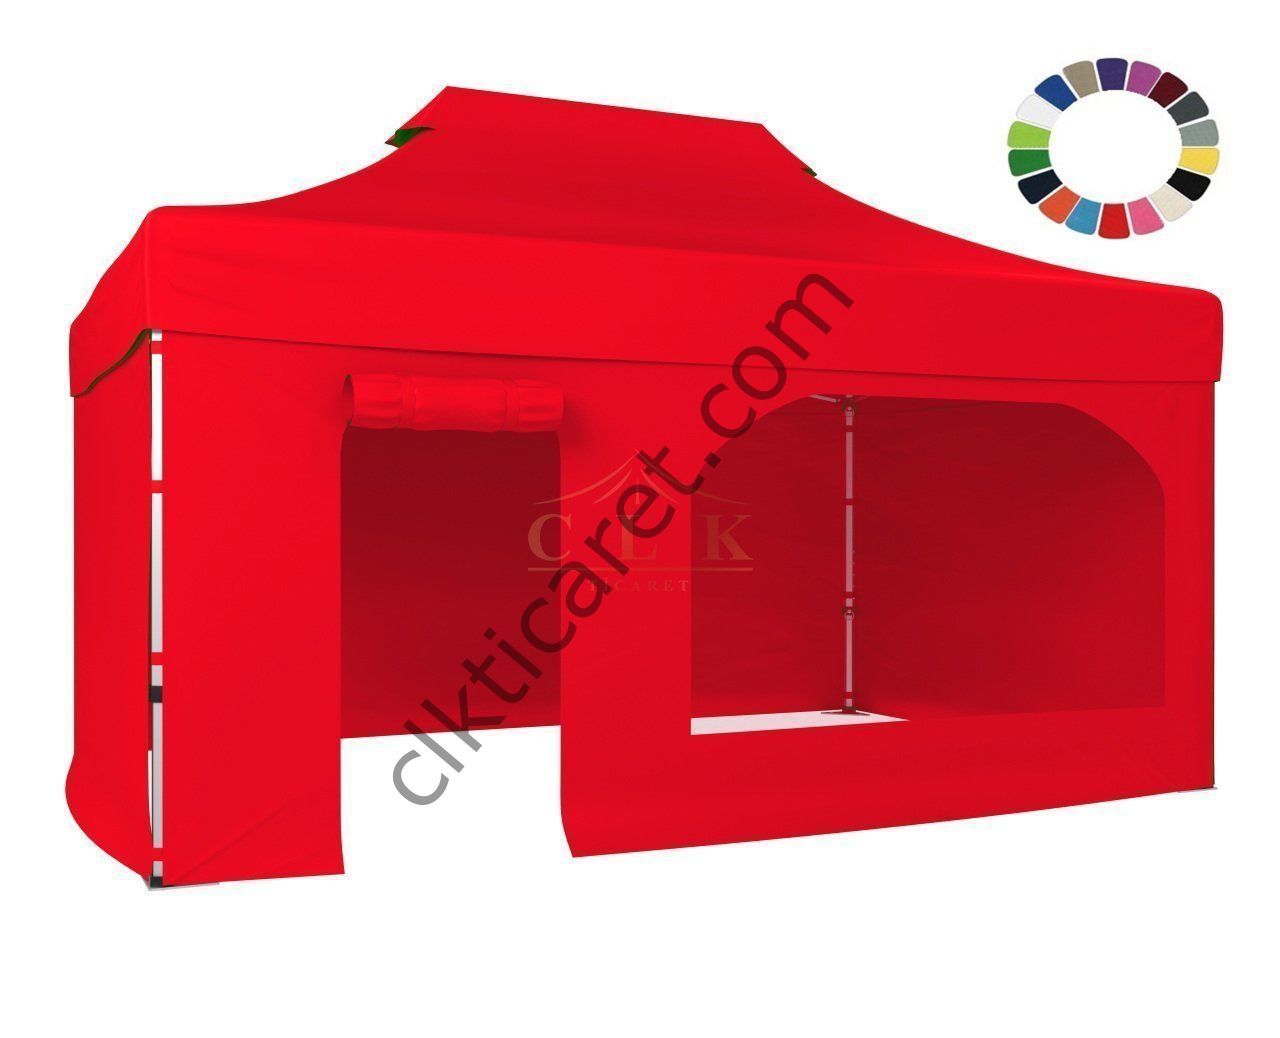 CLK 4x6 52mm Kalın Alüminyum Katlanabilir Tente Gazebo Çadır 3 Kenar Kapalı 1 Yan Kapı ve Pencereli